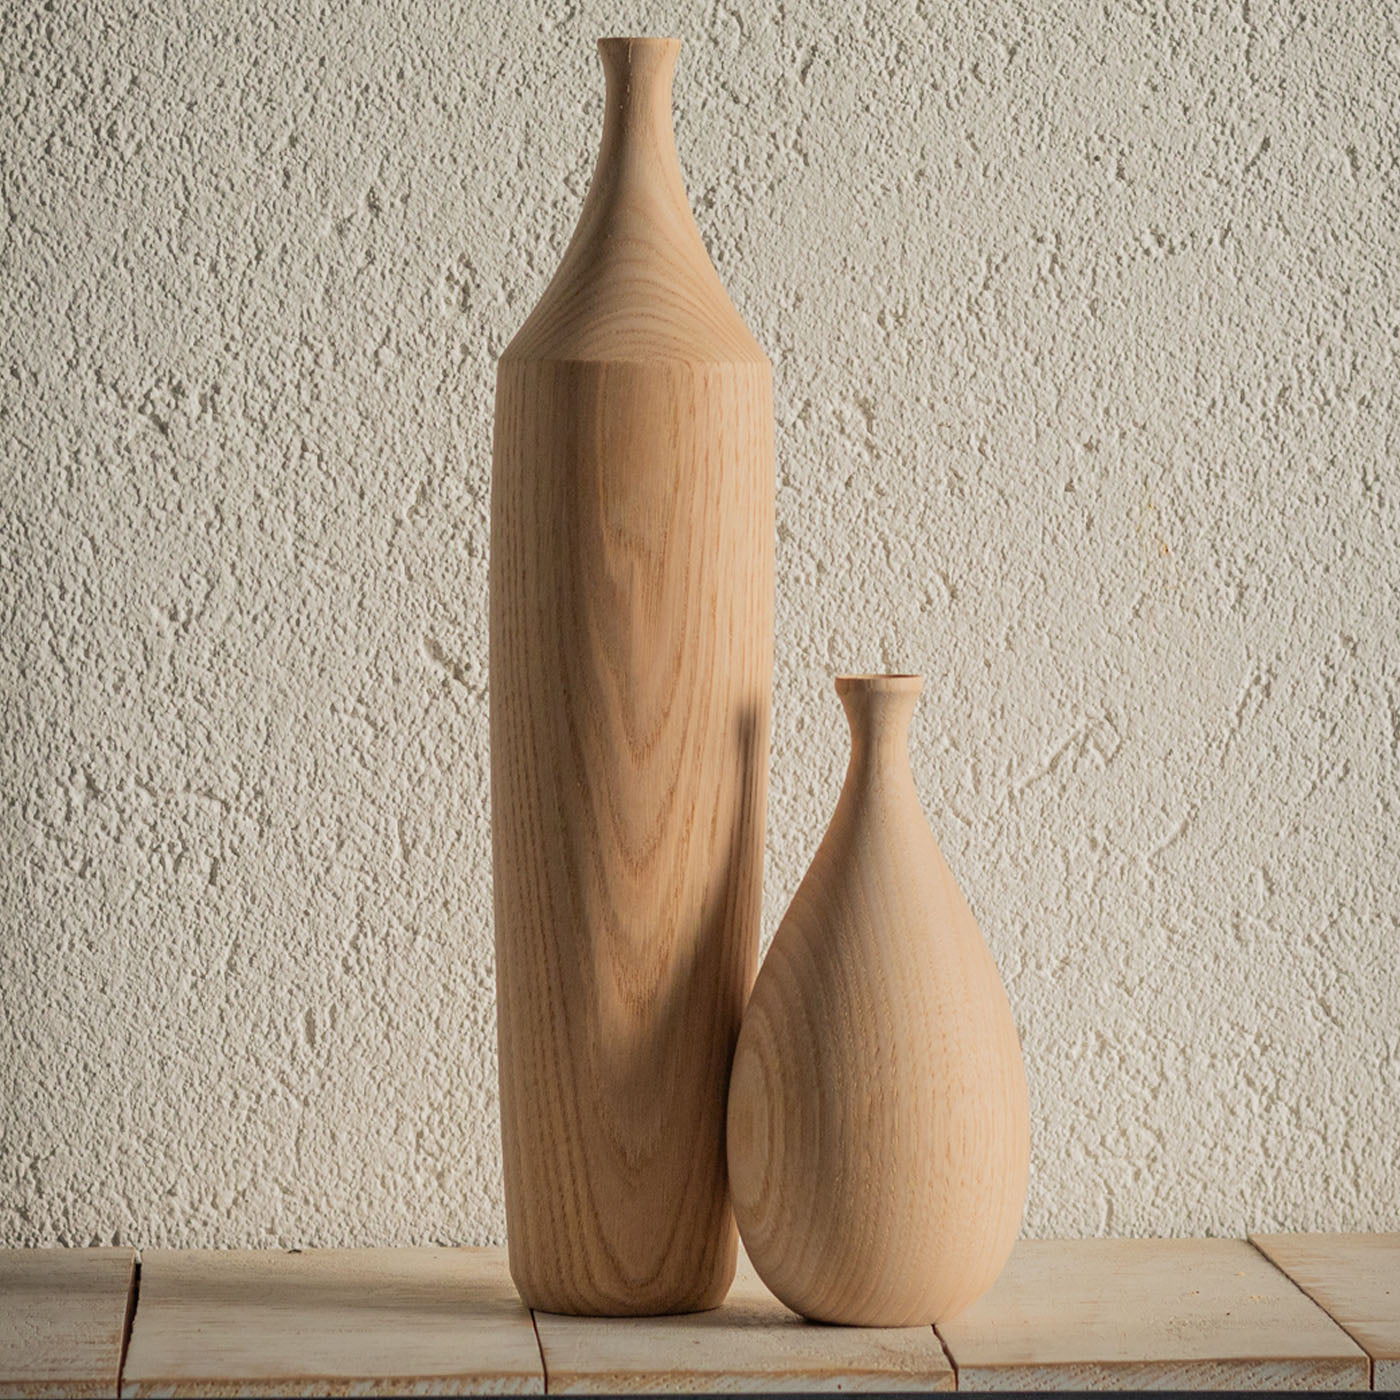 Wooden Sculptural Bottles Set #1 - Alternative view 1